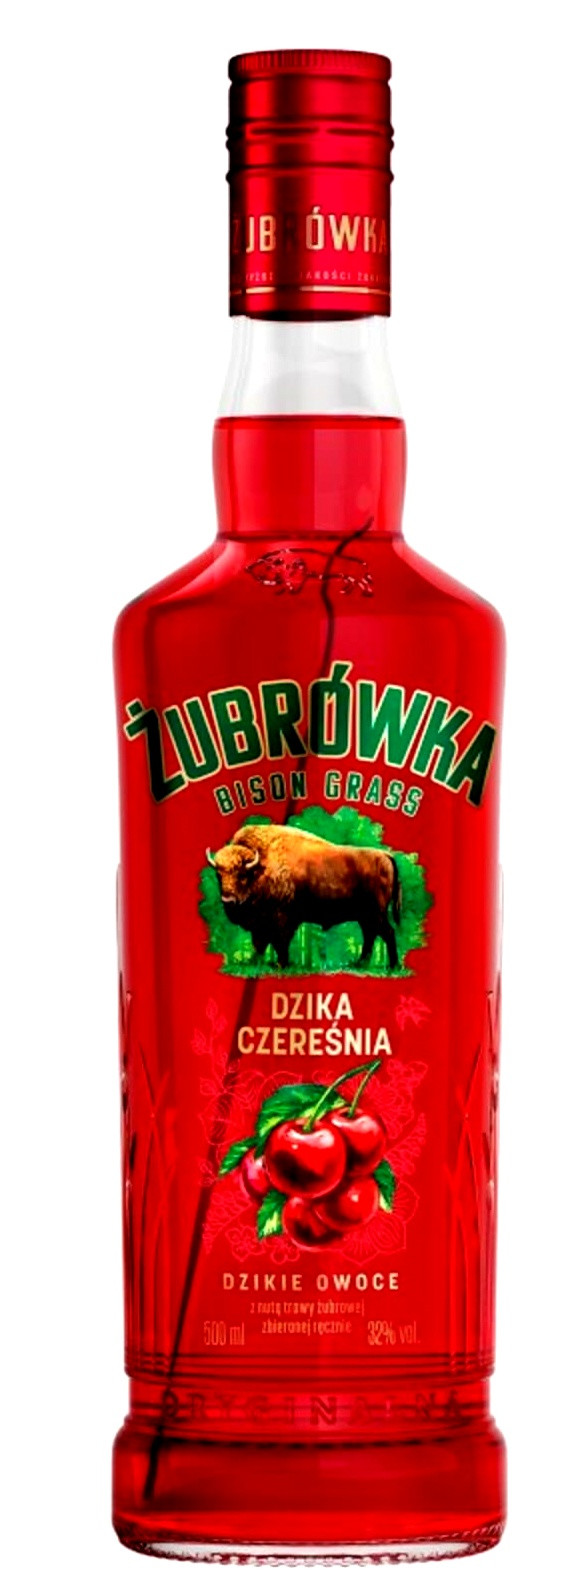 Zubrowka Wild Cherry 0.5l